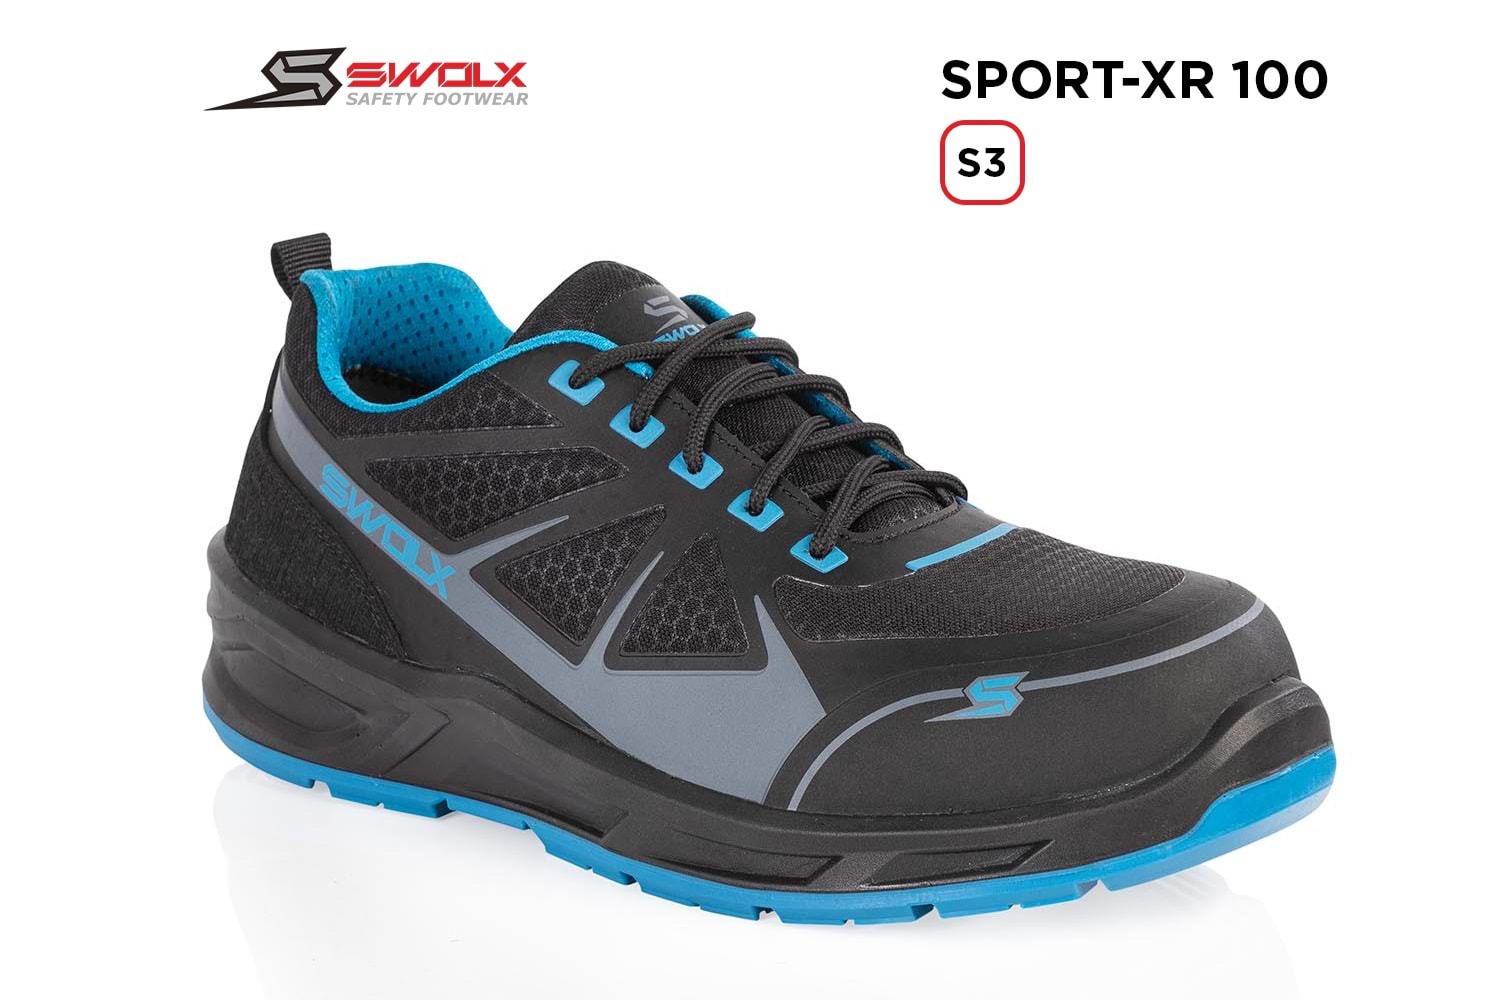 Swolx İş Ayakkabısı - Sport-Xr 100 S3 - 39